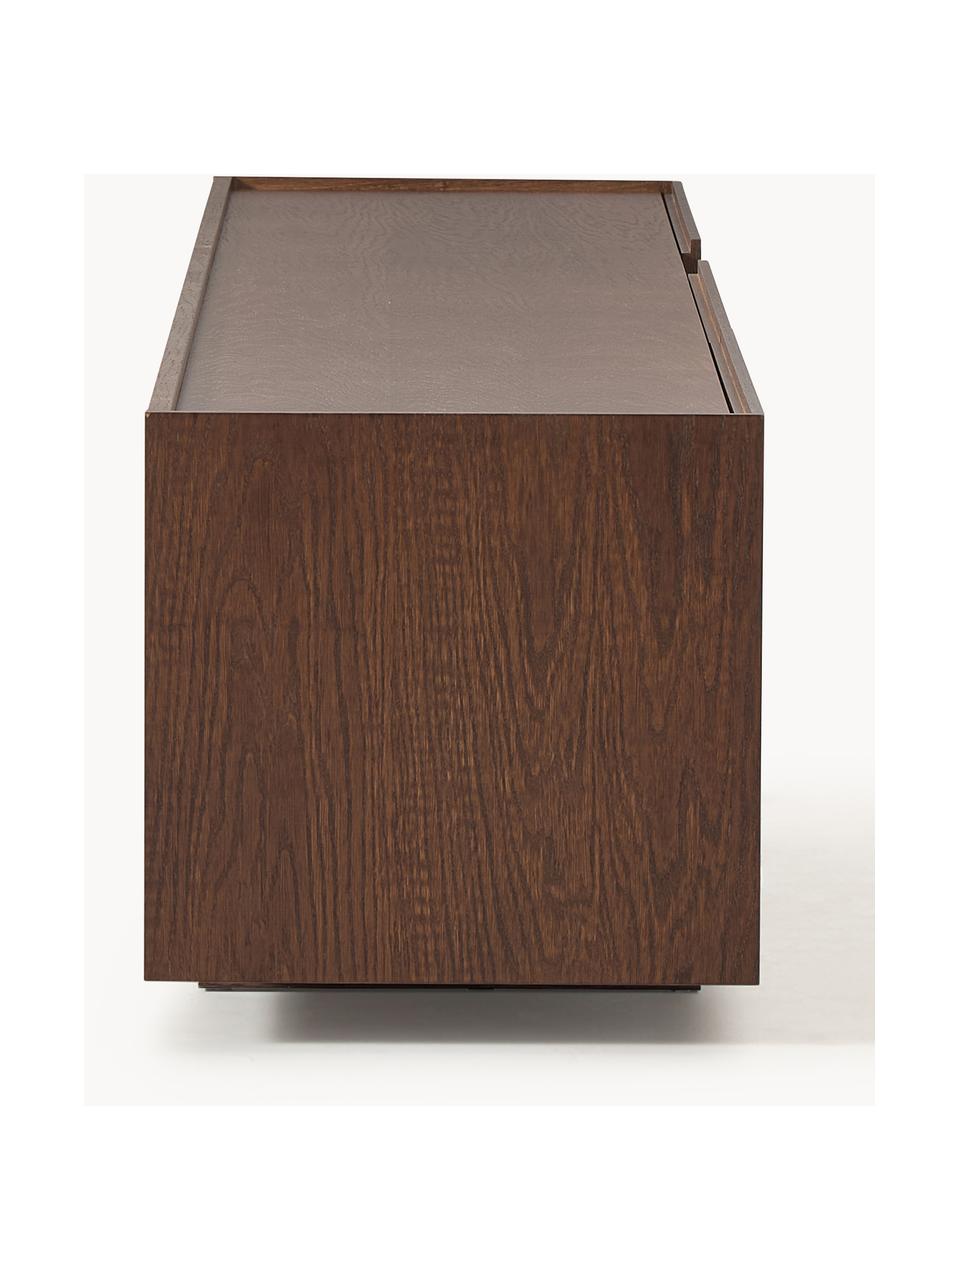 Dřevěný TV stolek Larsen, Dubové dřevo, tmavě hnědě lakované, Š 200 cm, V 42 cm